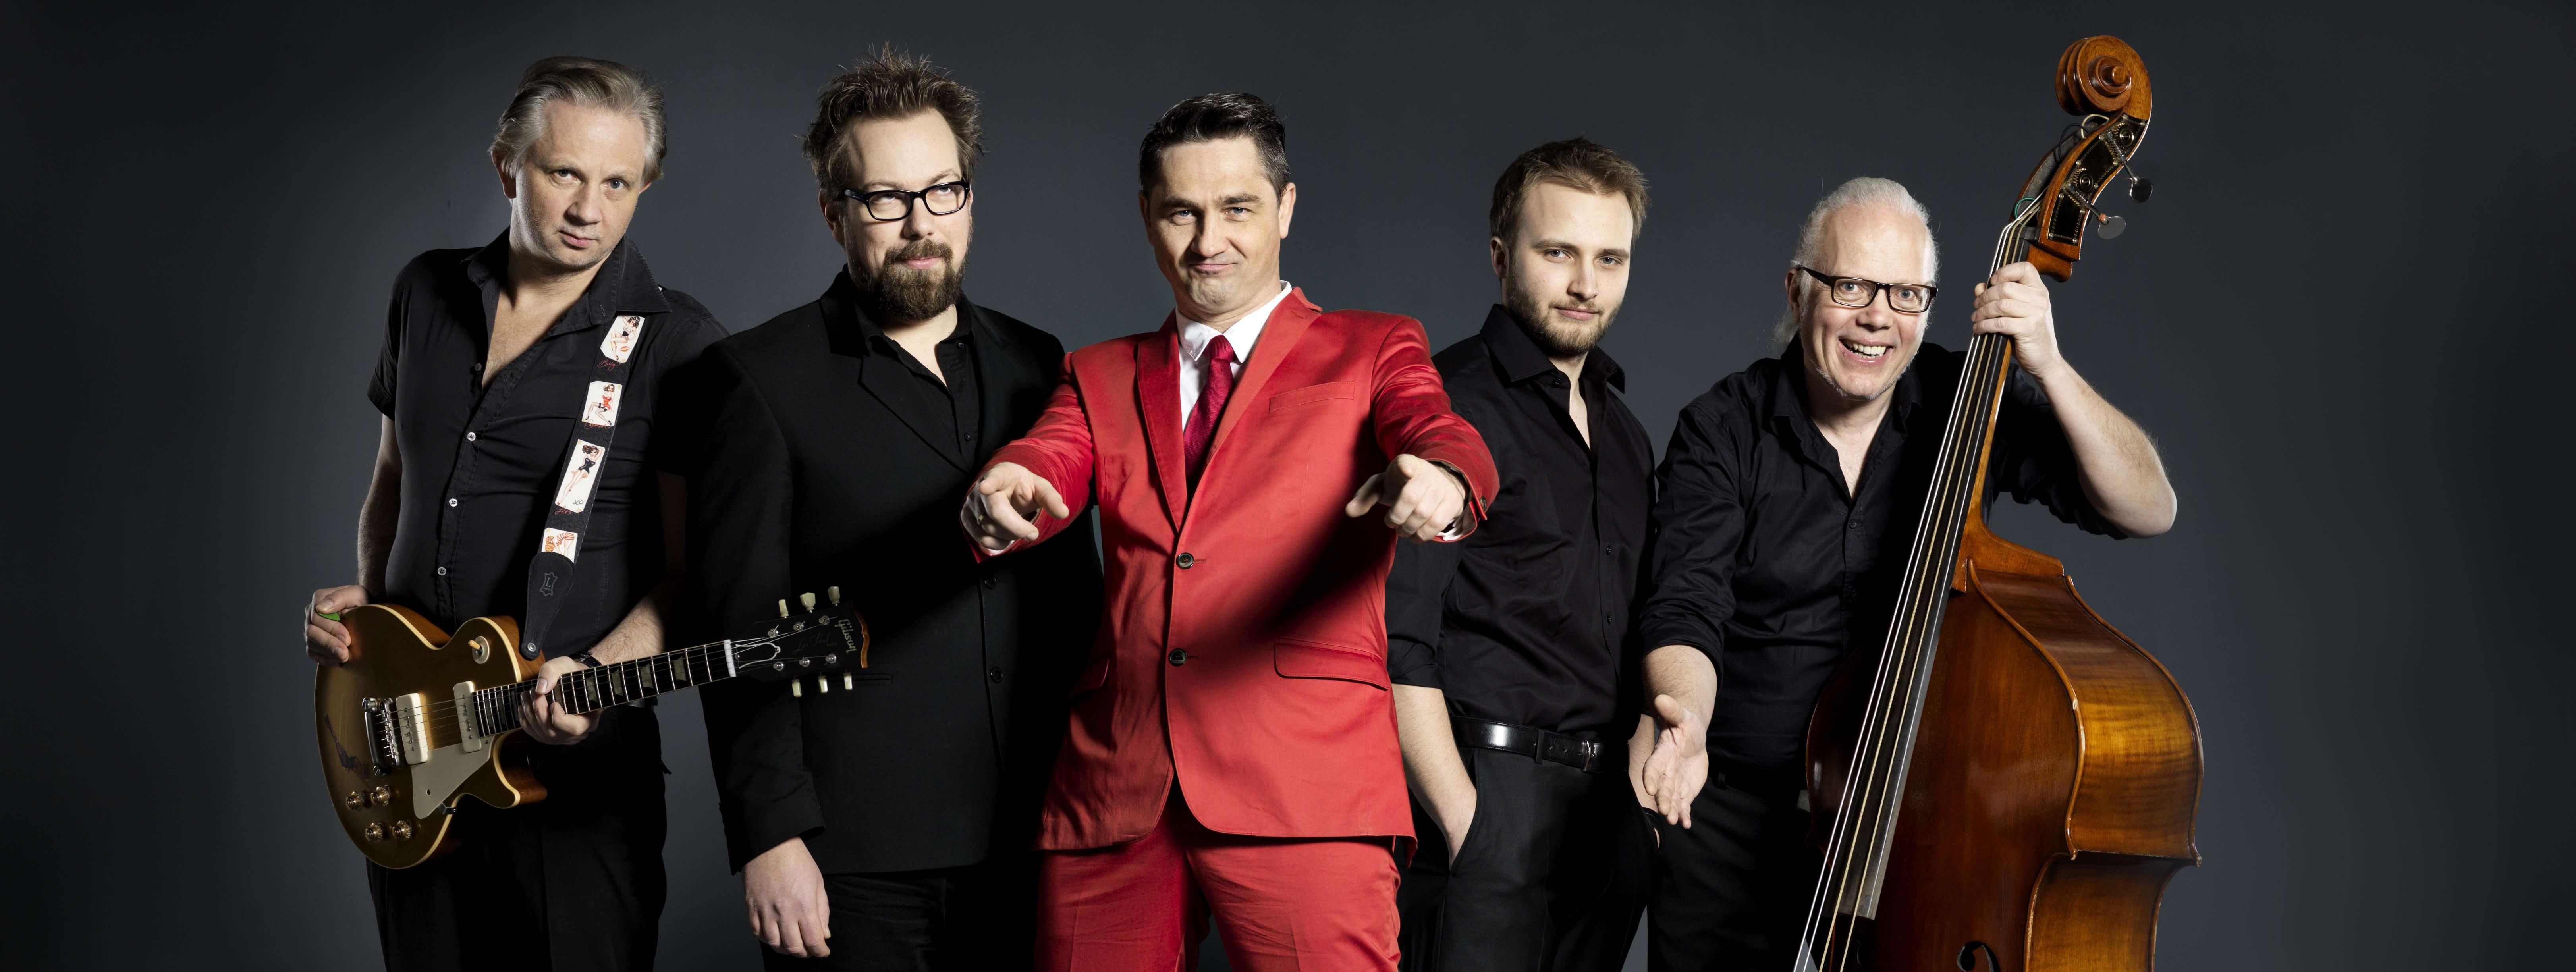 fünf Musiker stehen nebeneinander, alle sind in schwarzen Anzügen gekleides, nur der Sänger in der Mitte trägt rot. Sie halten Instrummente wie Saxophon und Kontrabass